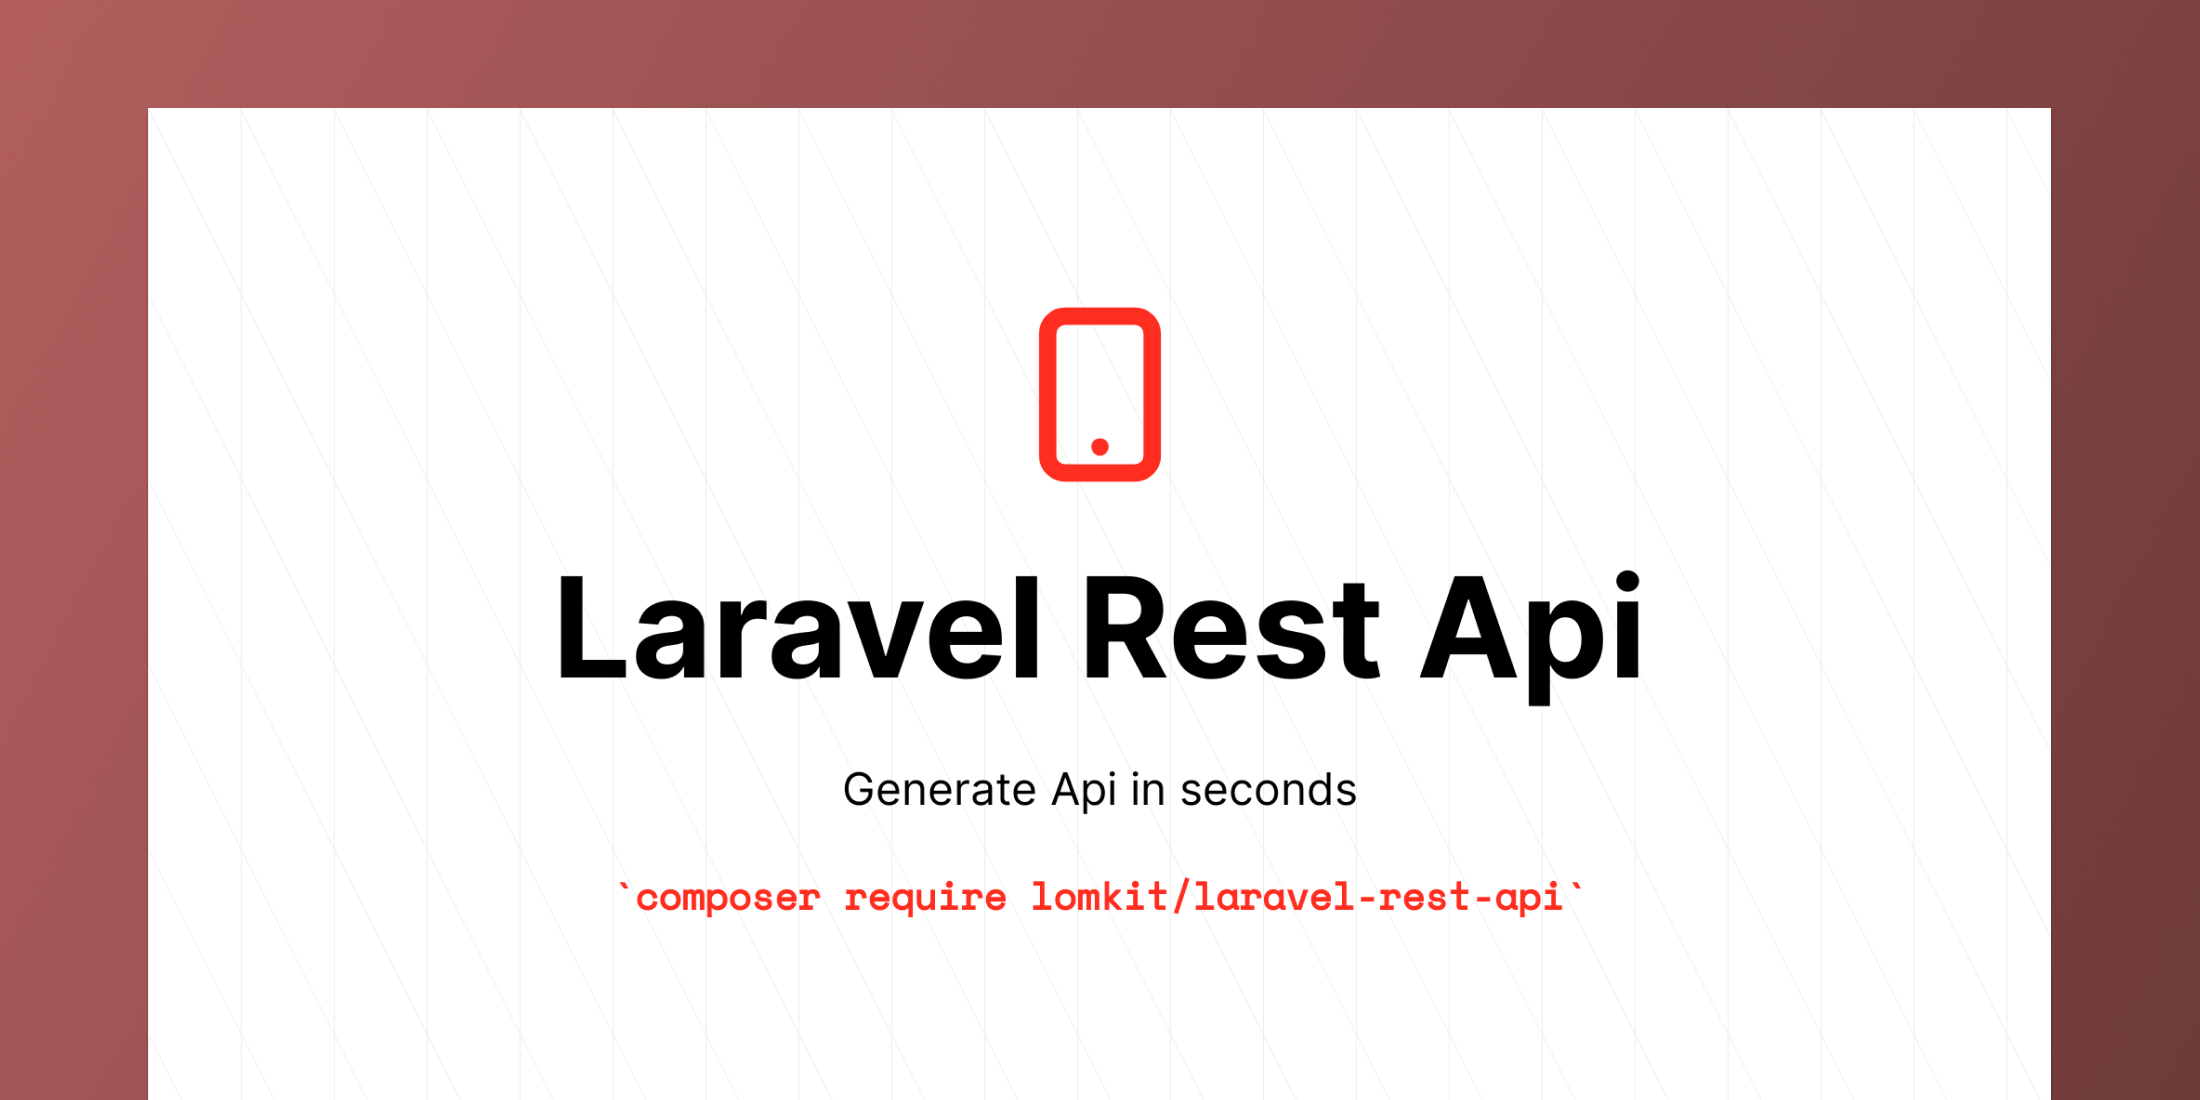 Laravel Rest Api now supports Laravel Scout image